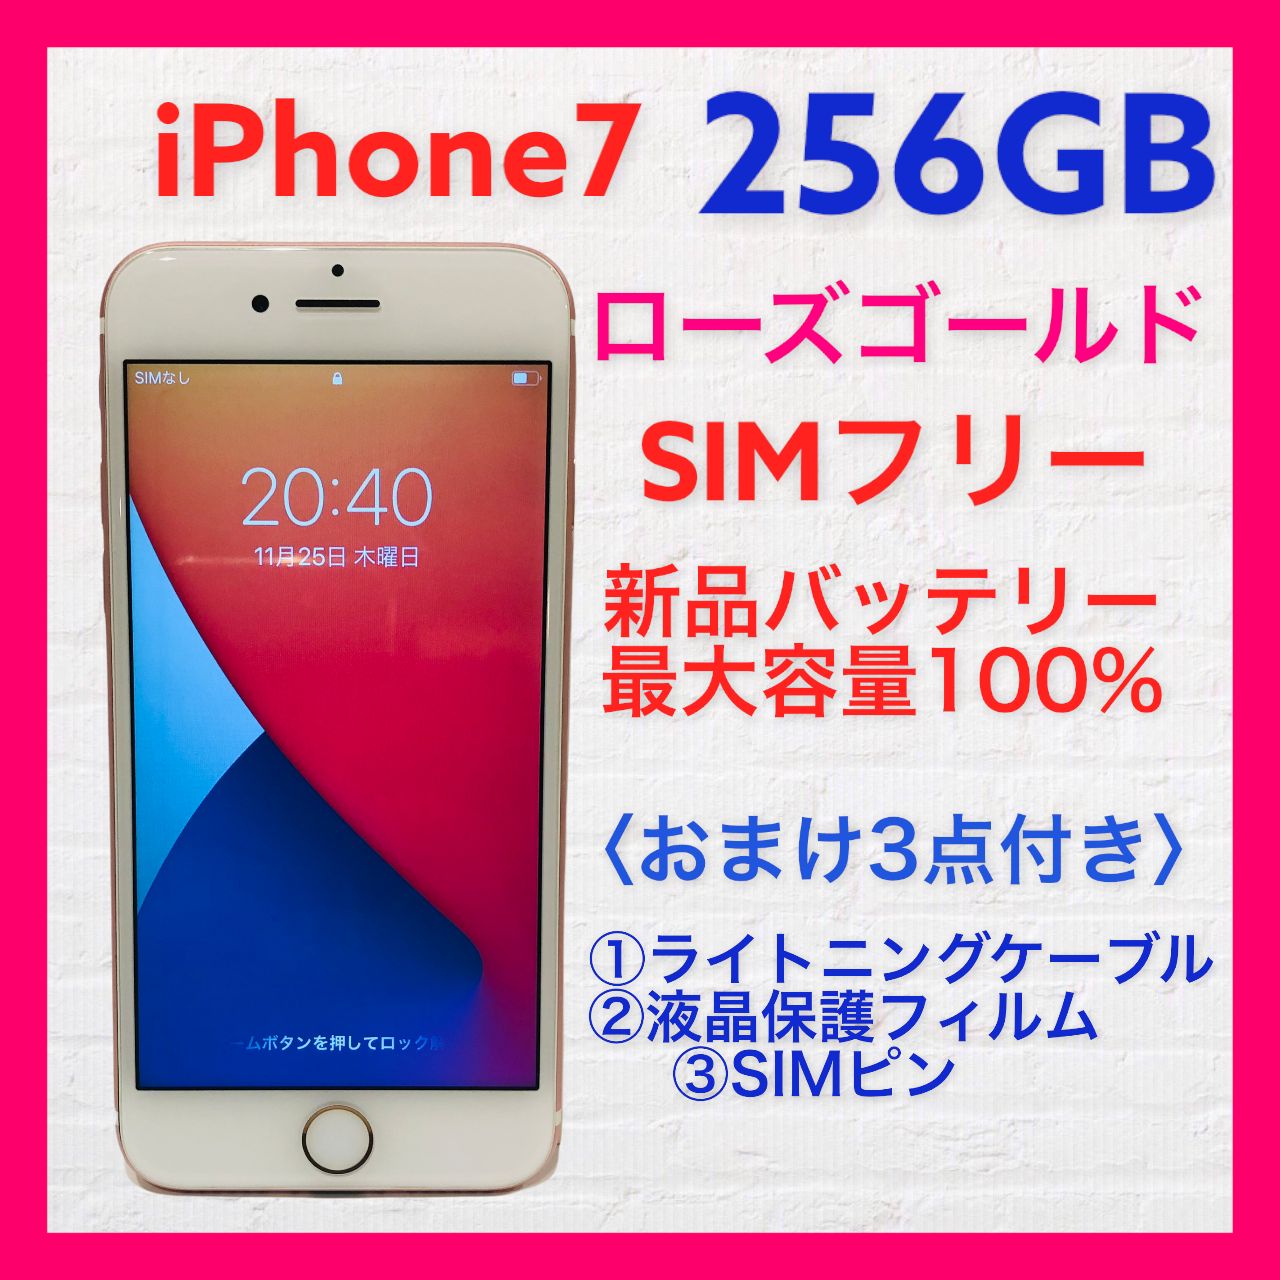 iPhone7 256GB SIMフリー ローズゴールド - メルカリ